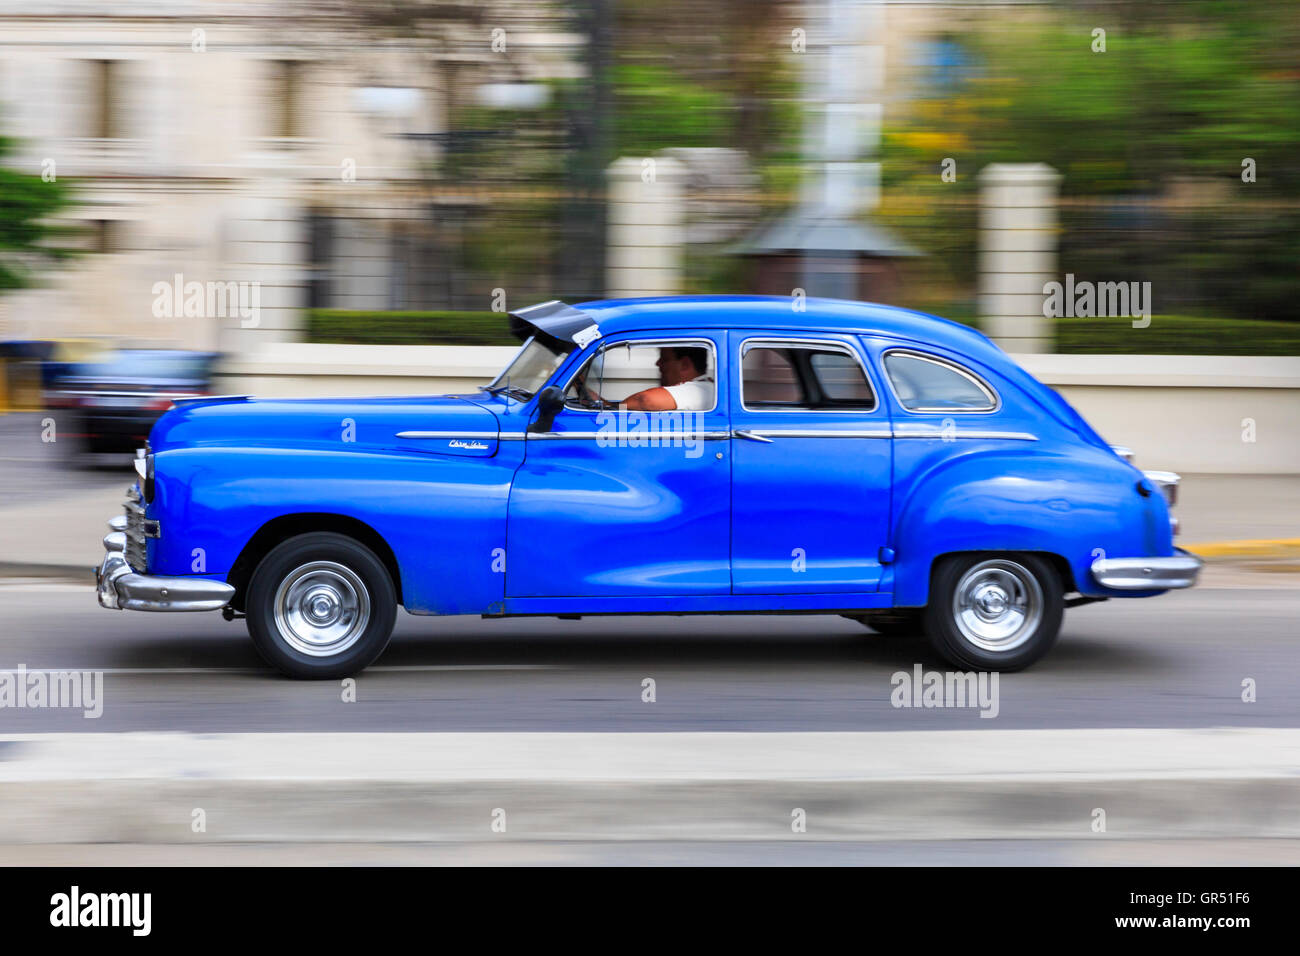 Bewegungsunschärfe panning Schuss von blauen amerikanischen Oldtimer fahren in Havanna Vieja, Havanna, Kuba Stockfoto